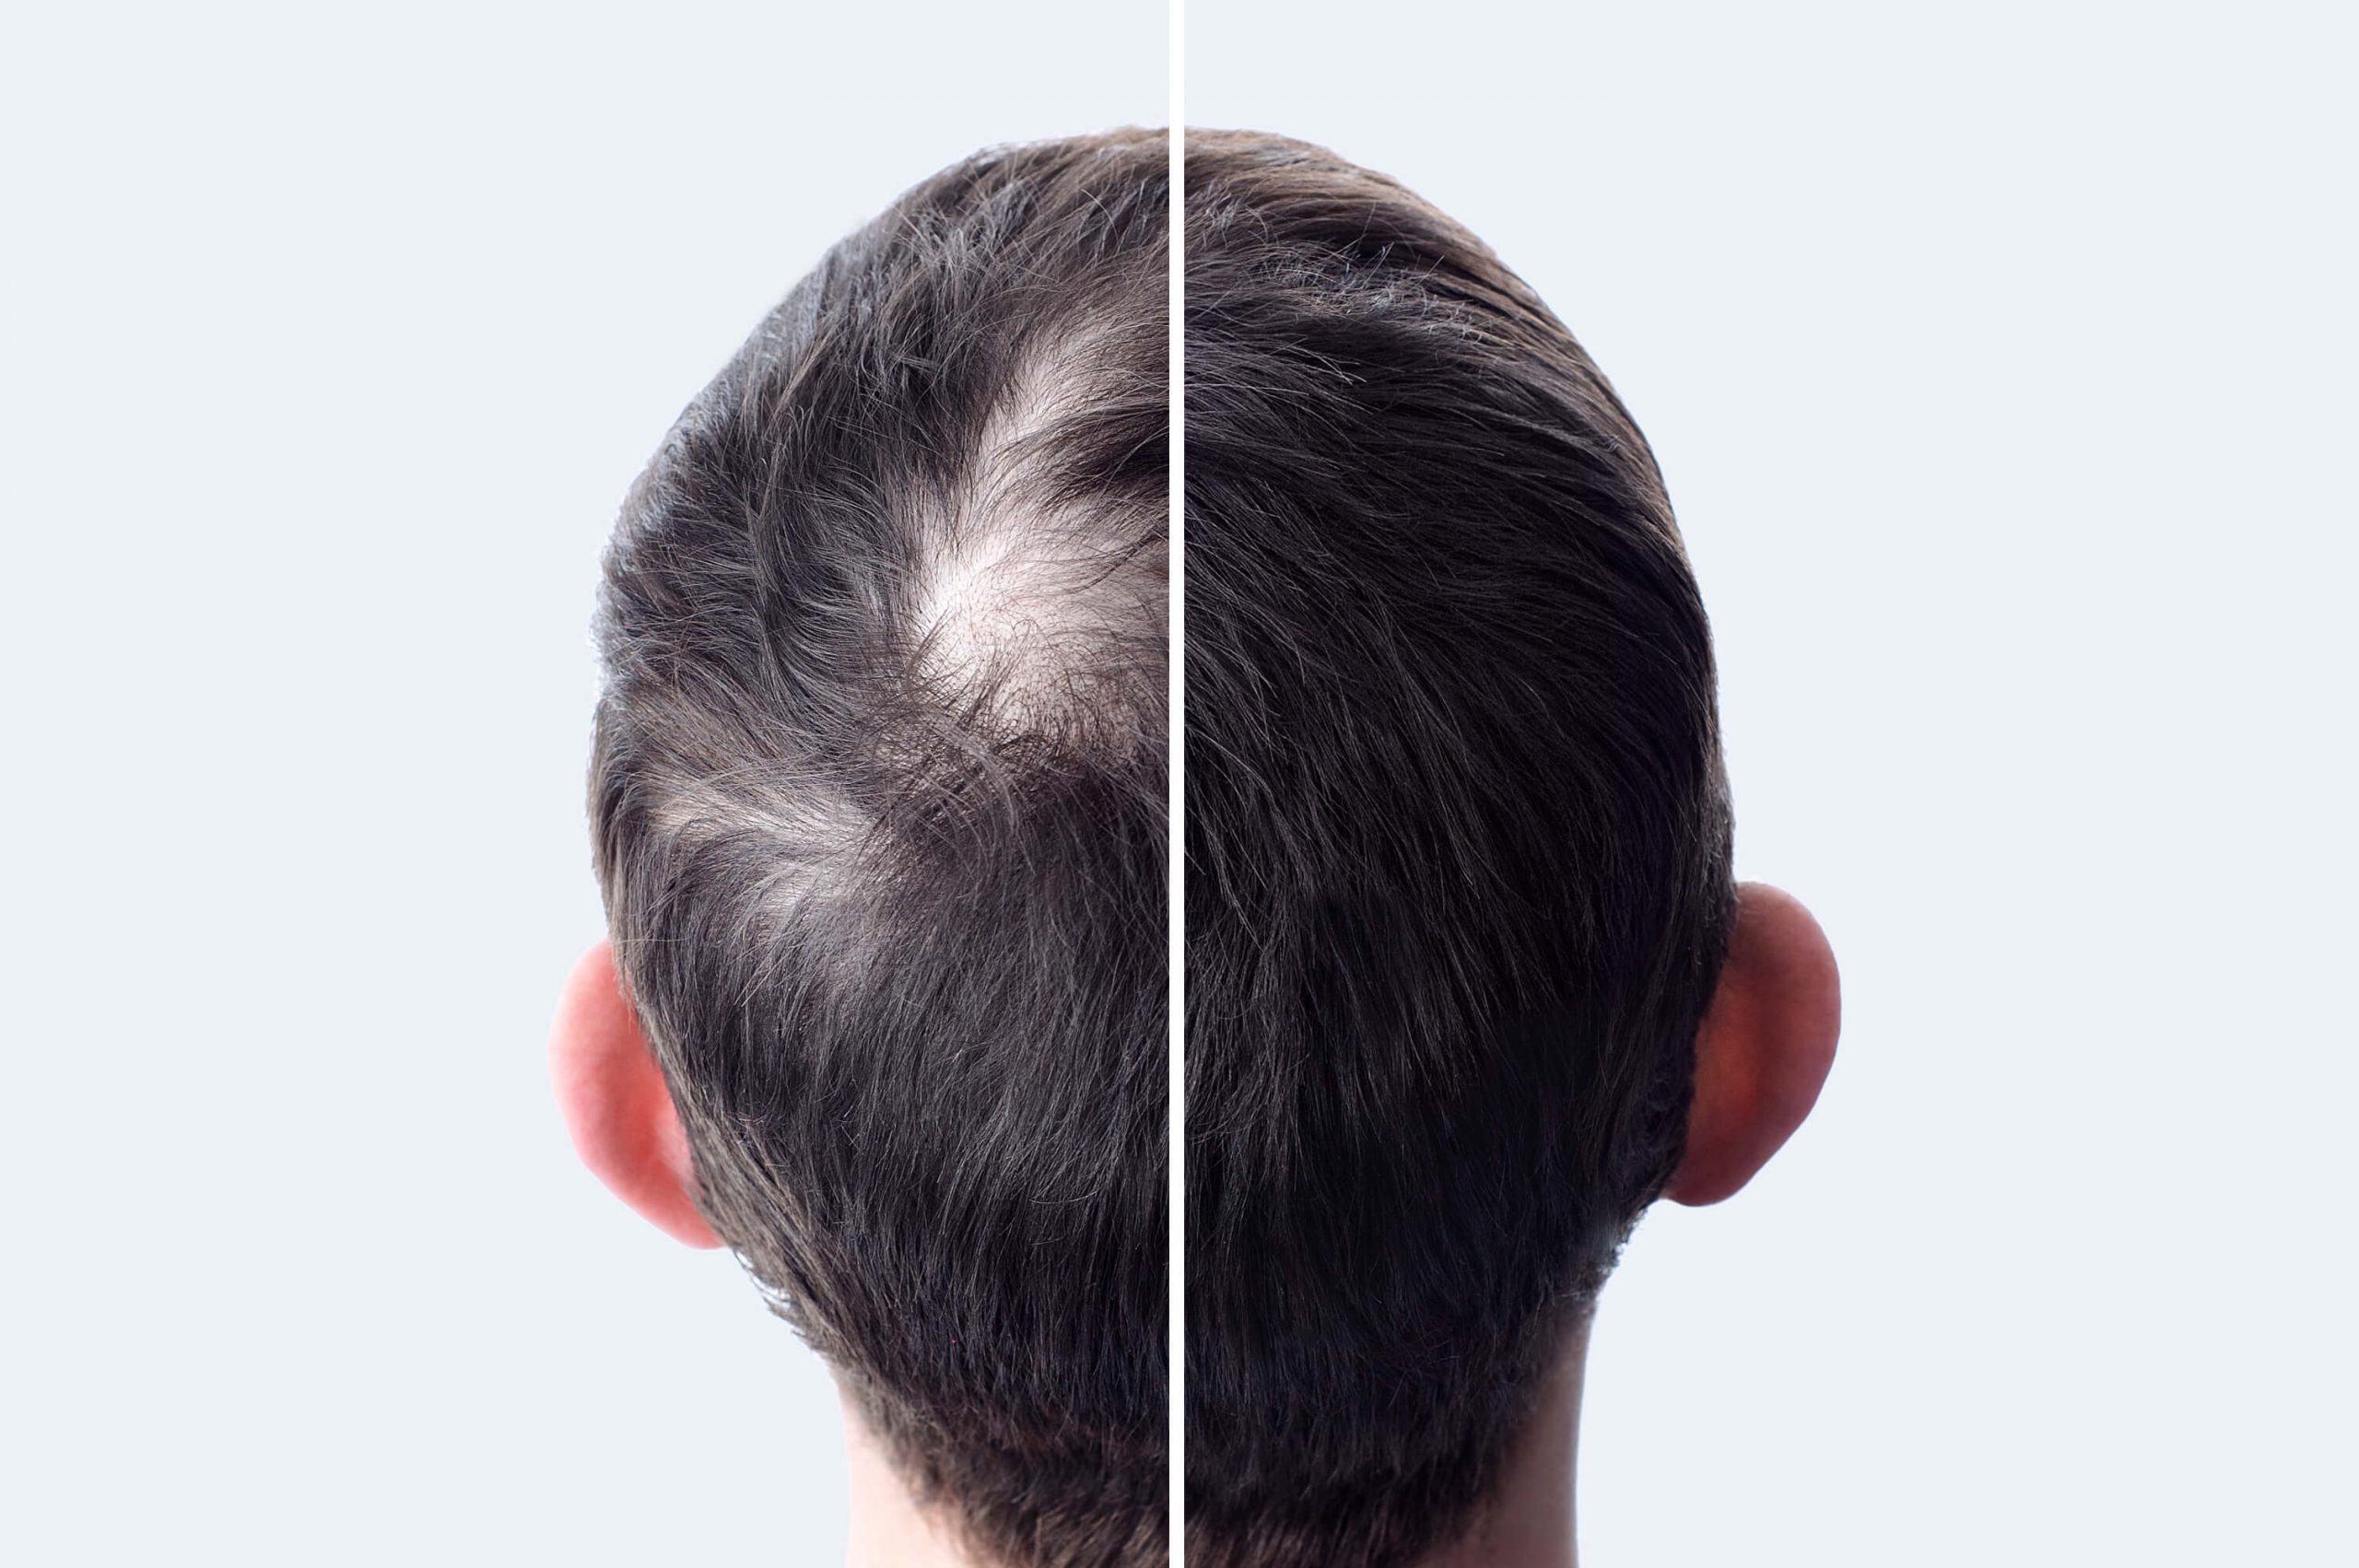 Perte de densité : comment densifier et épaissir ses cheveux ?